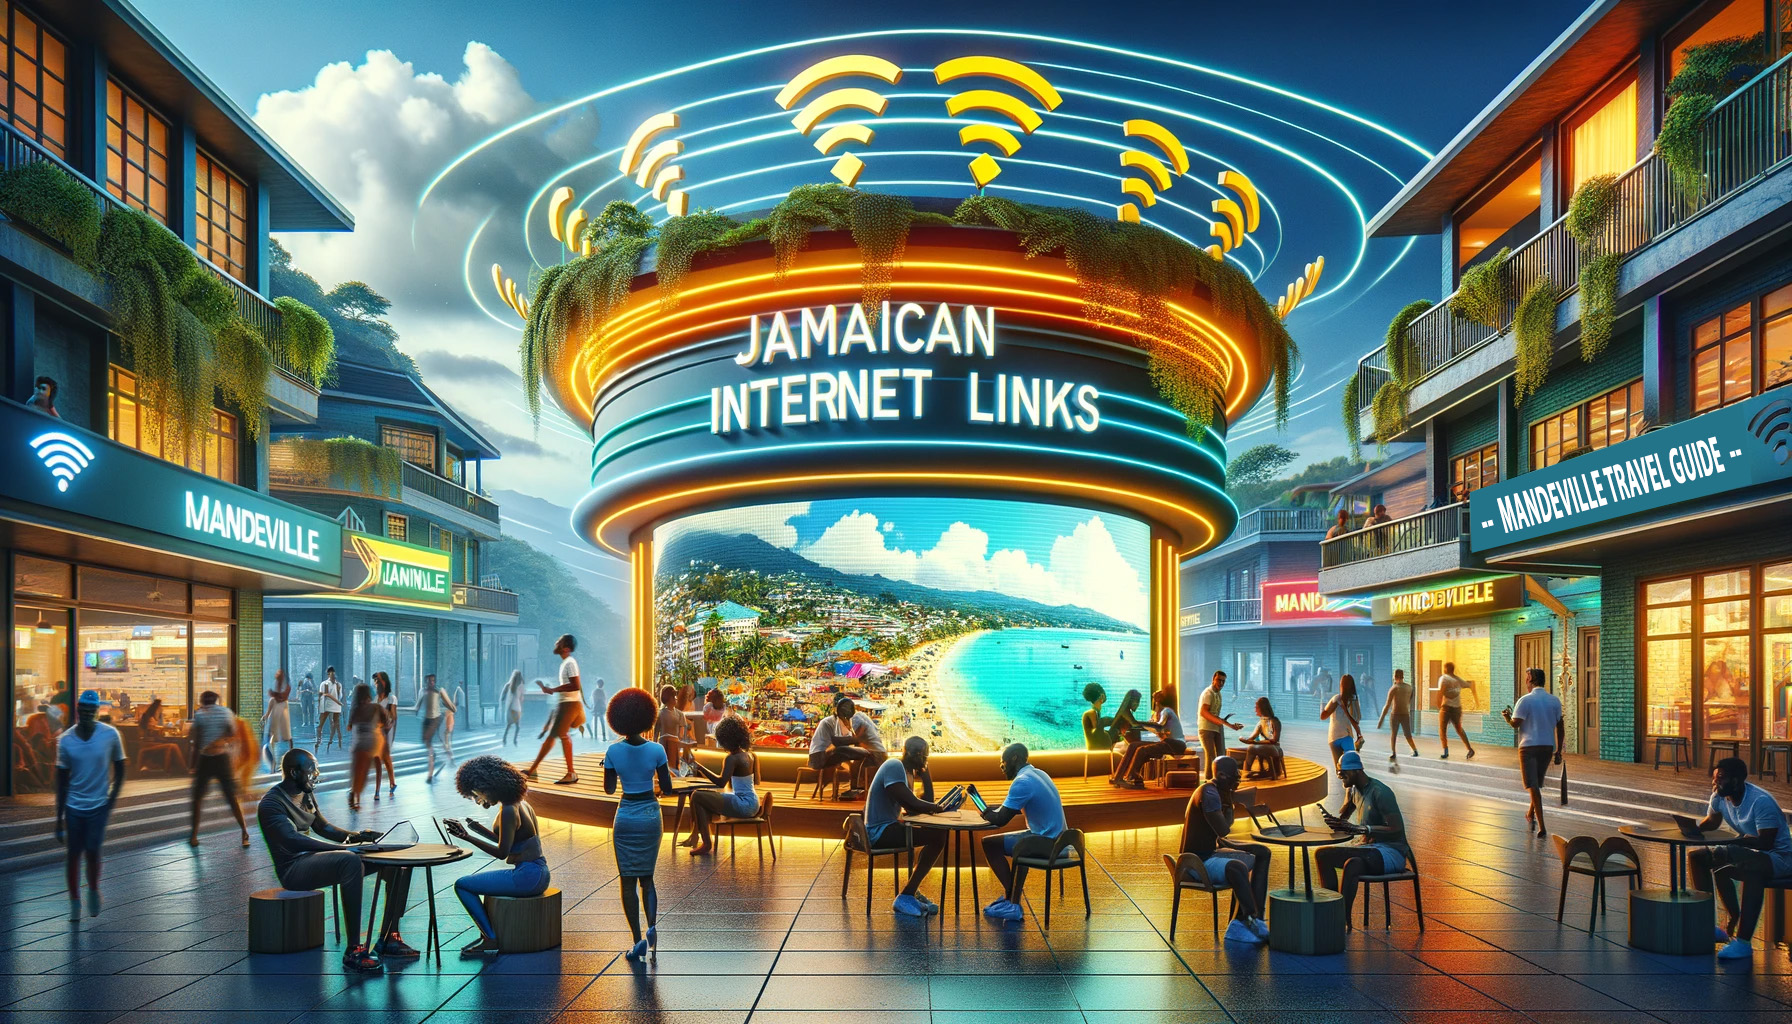 Jamaican Internet Links - Mandeville Travel Guide